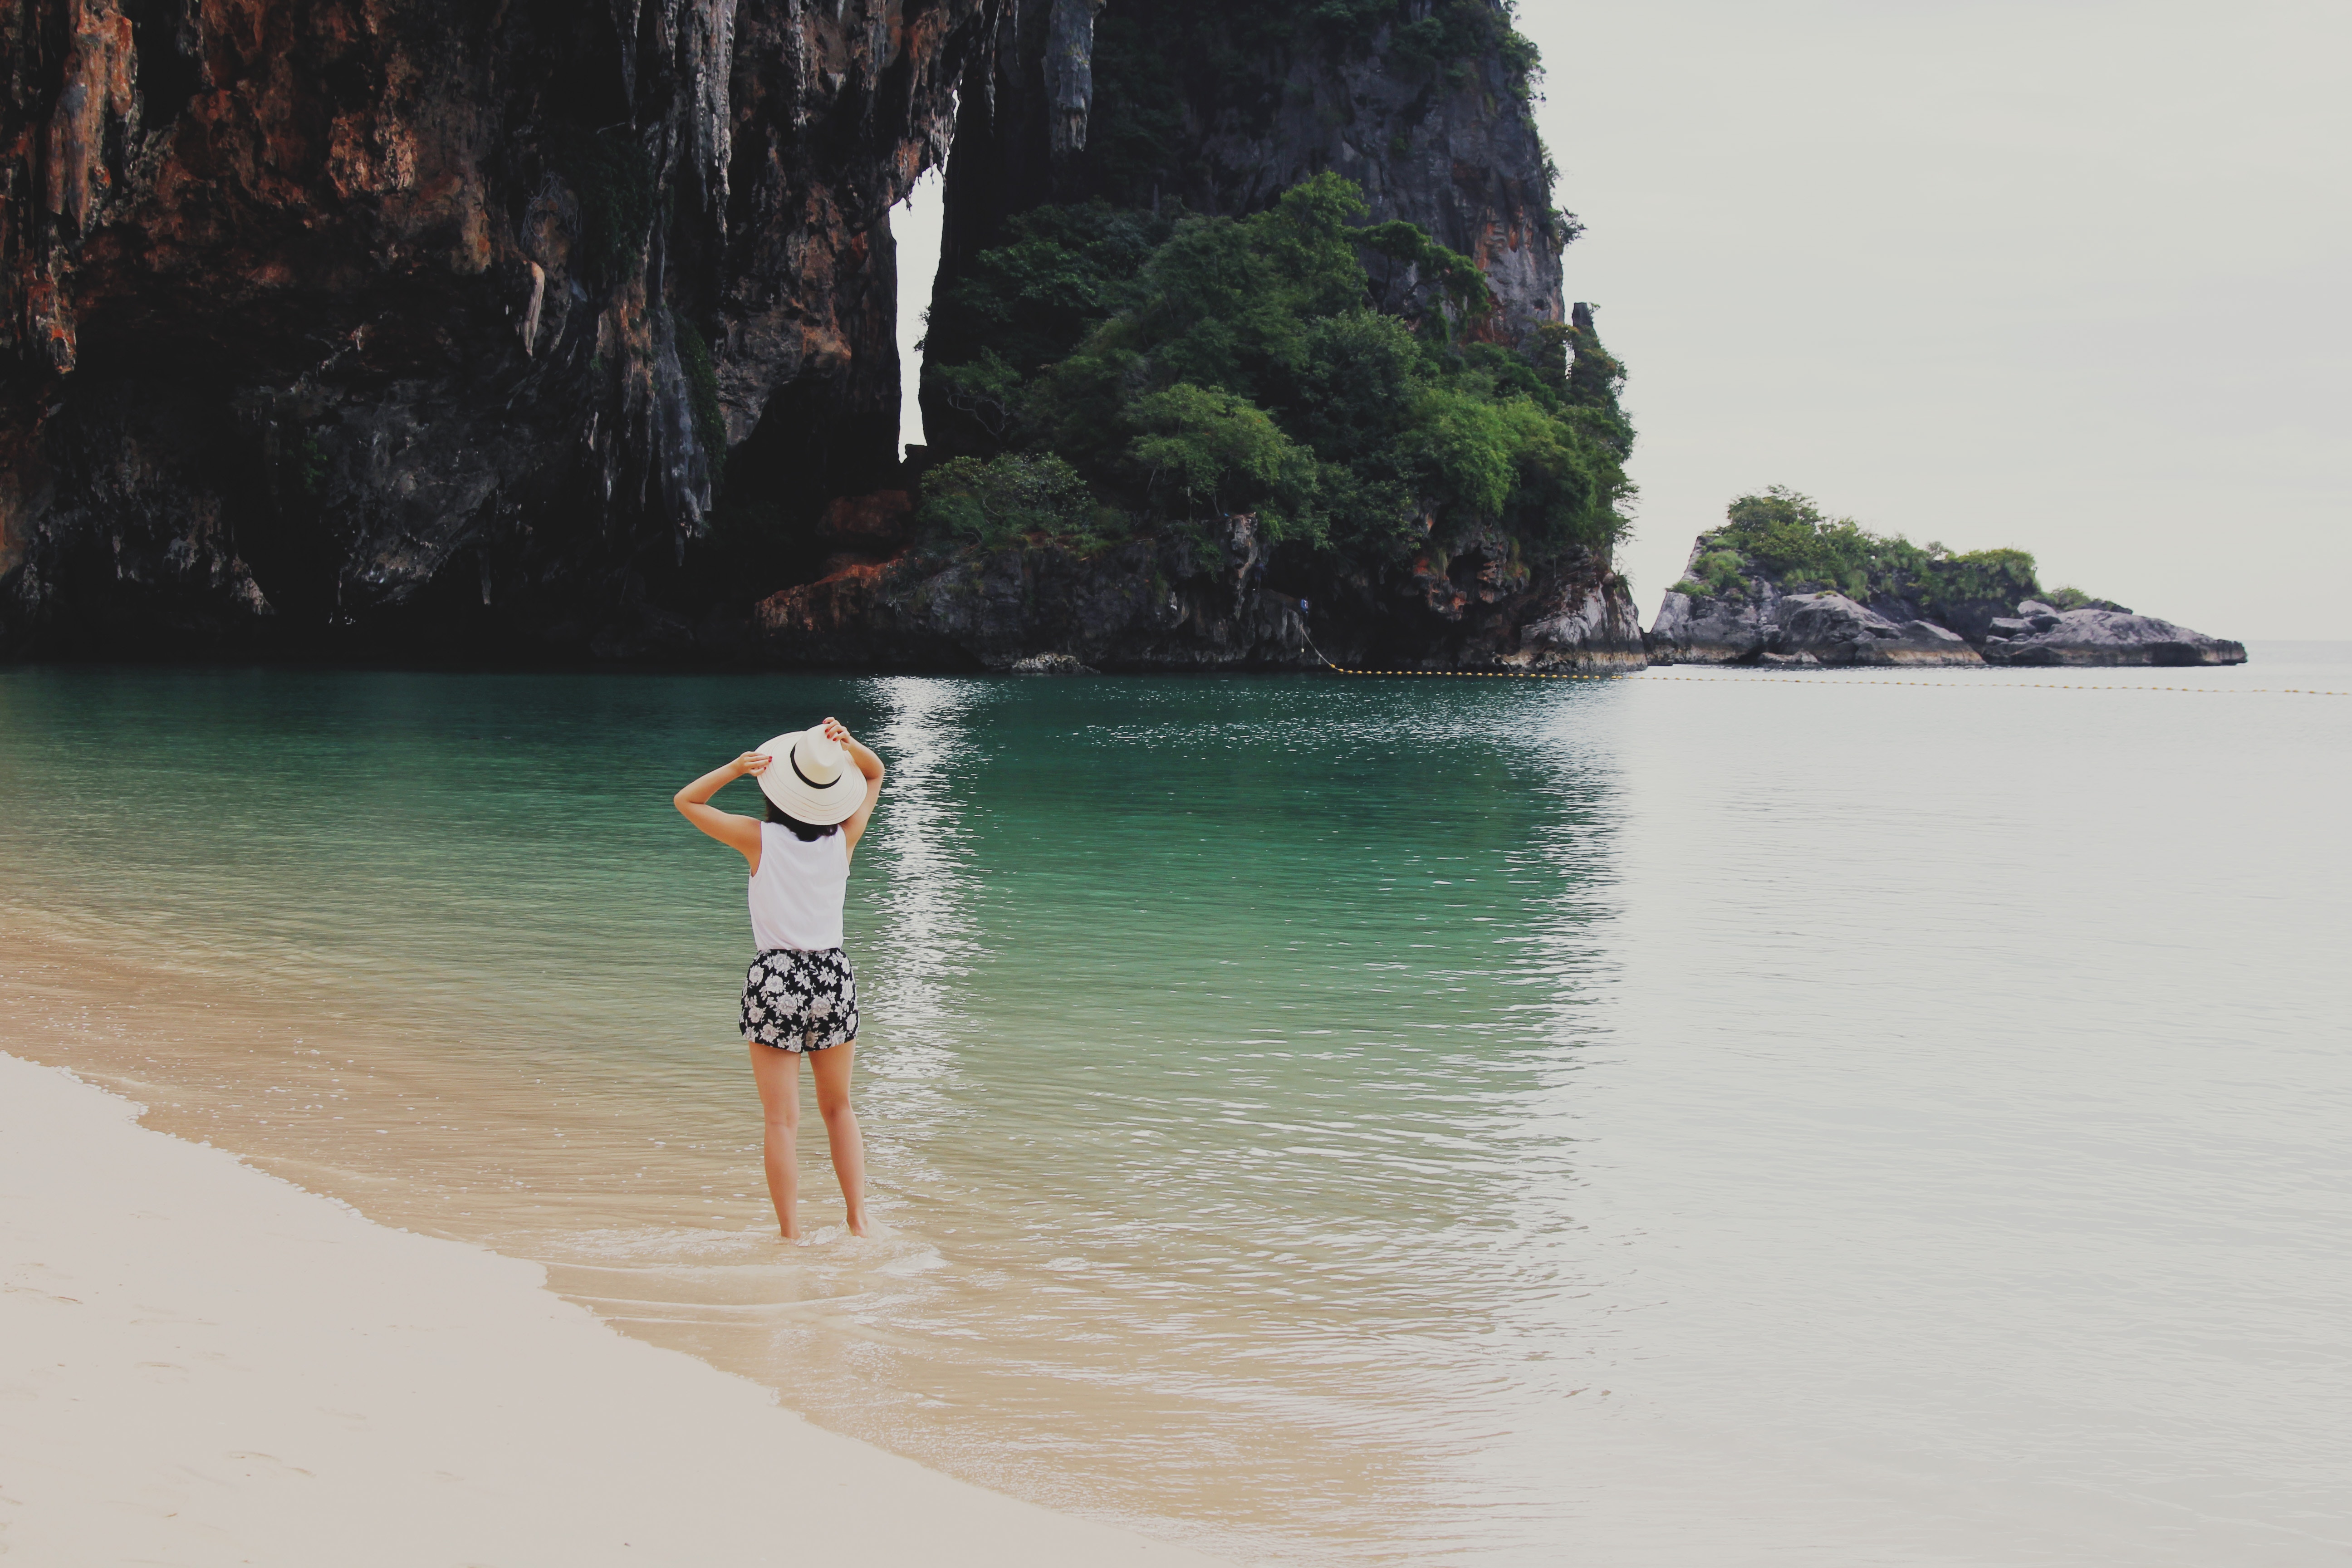 femme en voyage, de dos, probablement vietnam, en Asie, plage, rocher, pieds dans l'eau